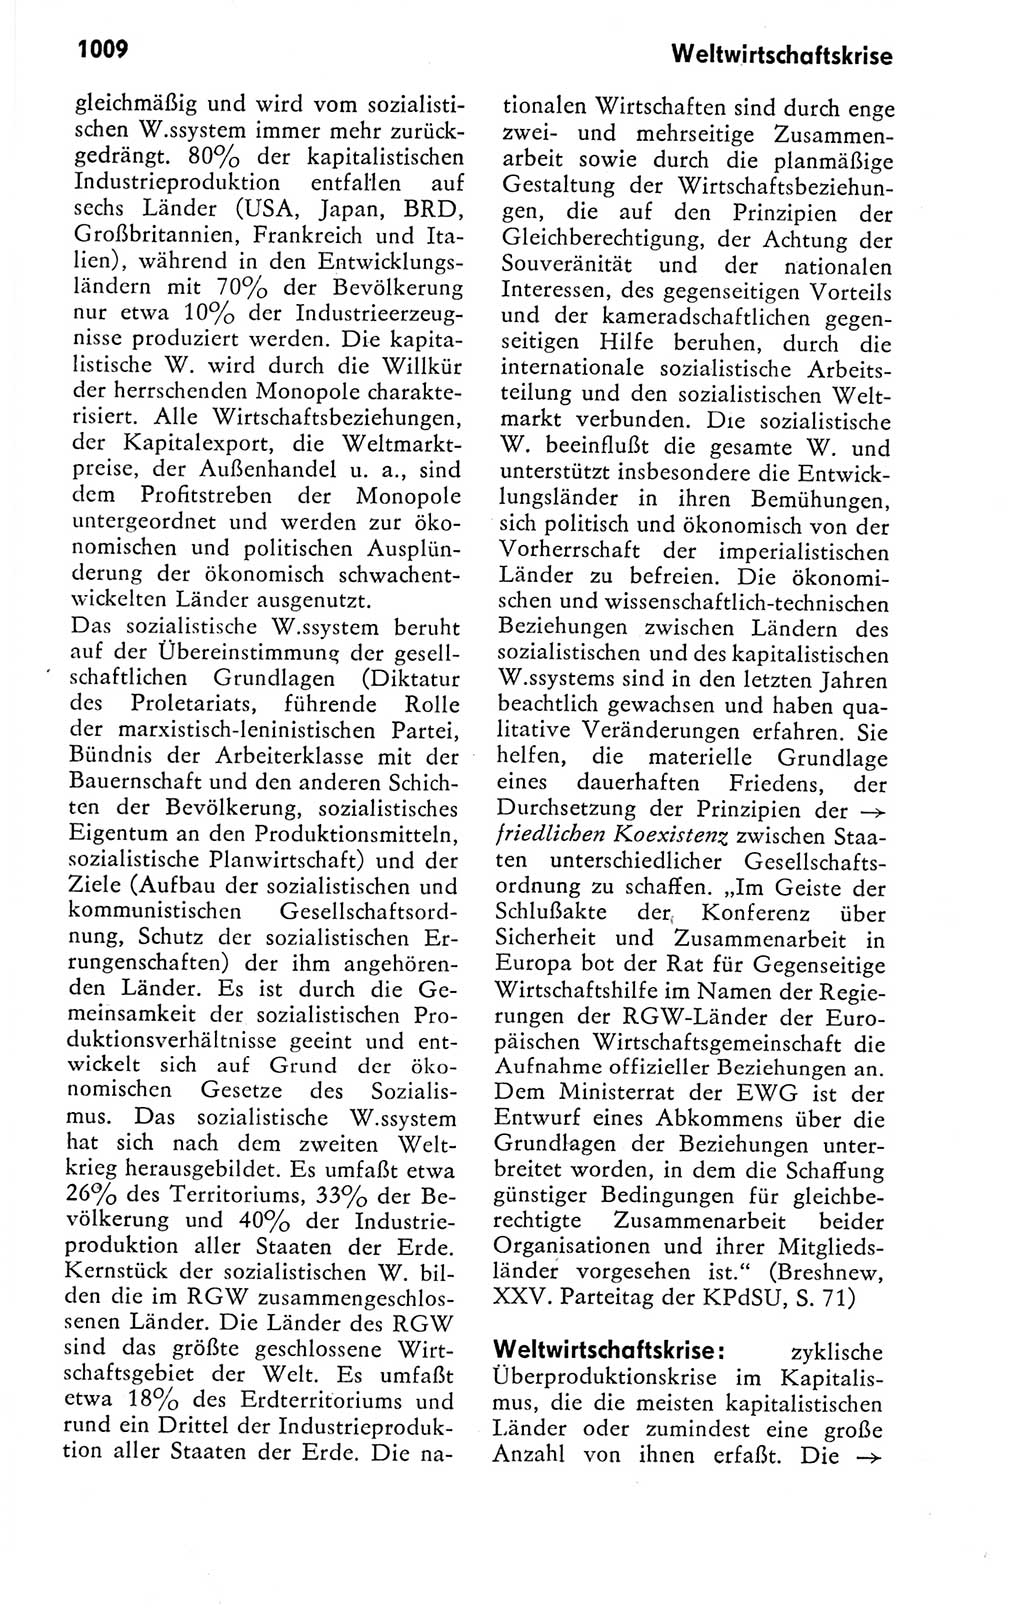 Kleines politisches Wörterbuch [Deutsche Demokratische Republik (DDR)] 1978, Seite 1009 (Kl. pol. Wb. DDR 1978, S. 1009)